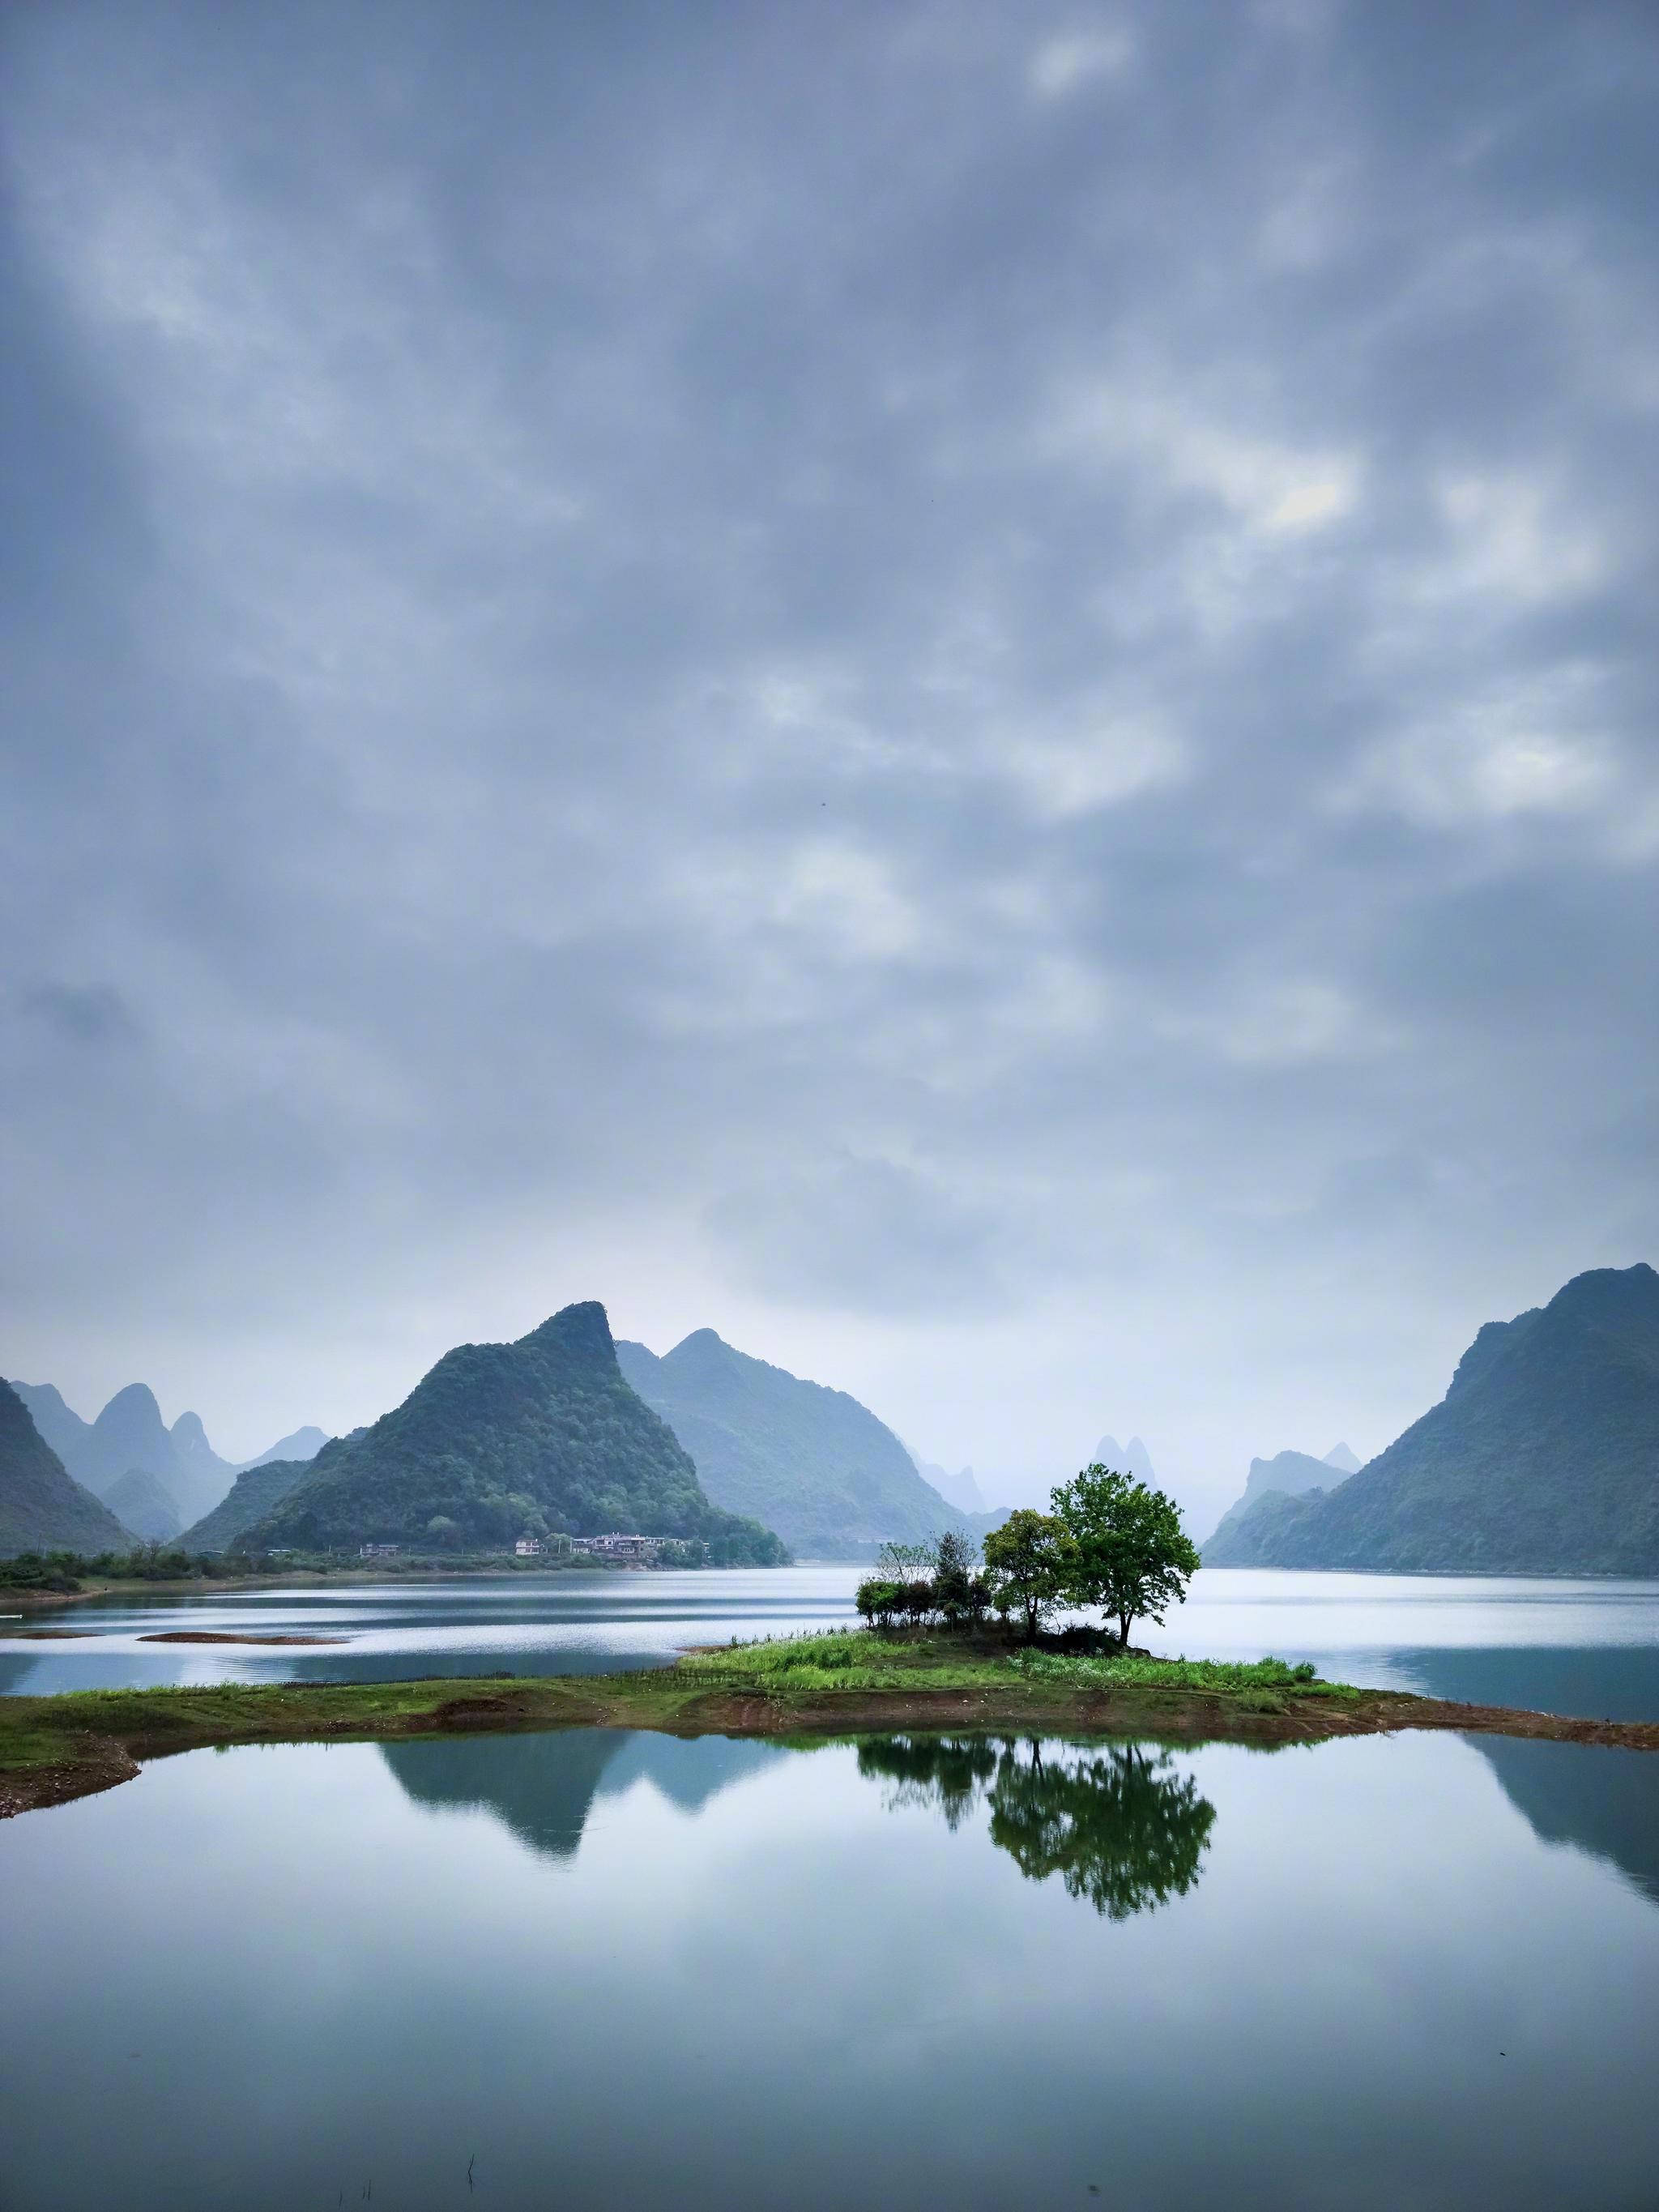 小米10 pro拍的桂林山水,美得像是仙境.(图@桂林落霞